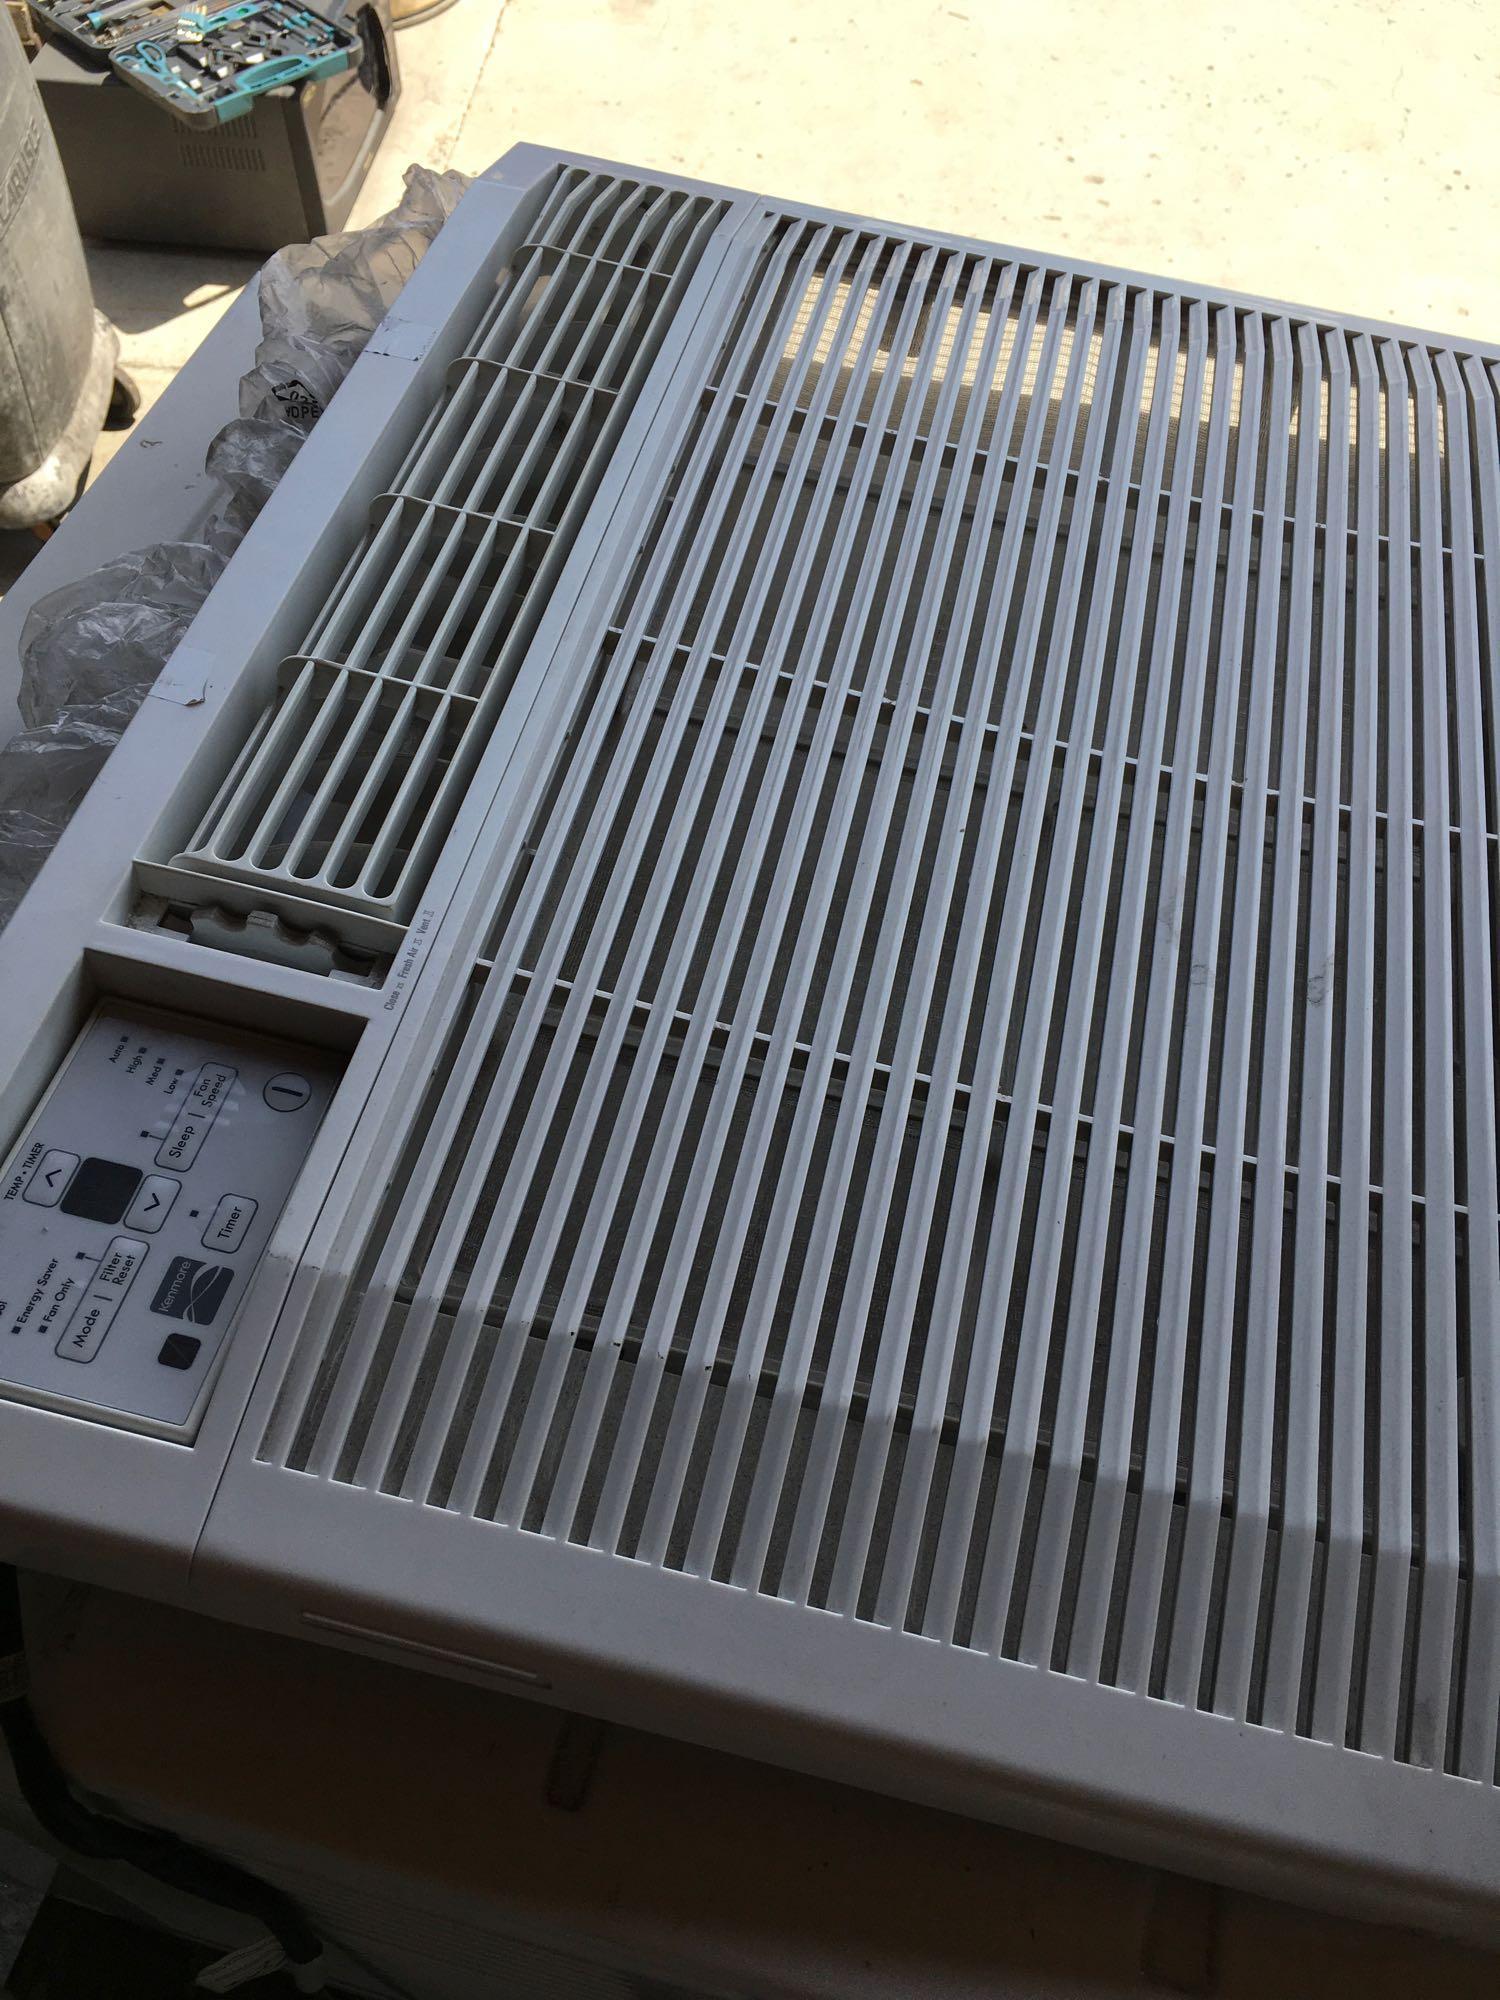 Kenmore model 753.86185 air conditioner